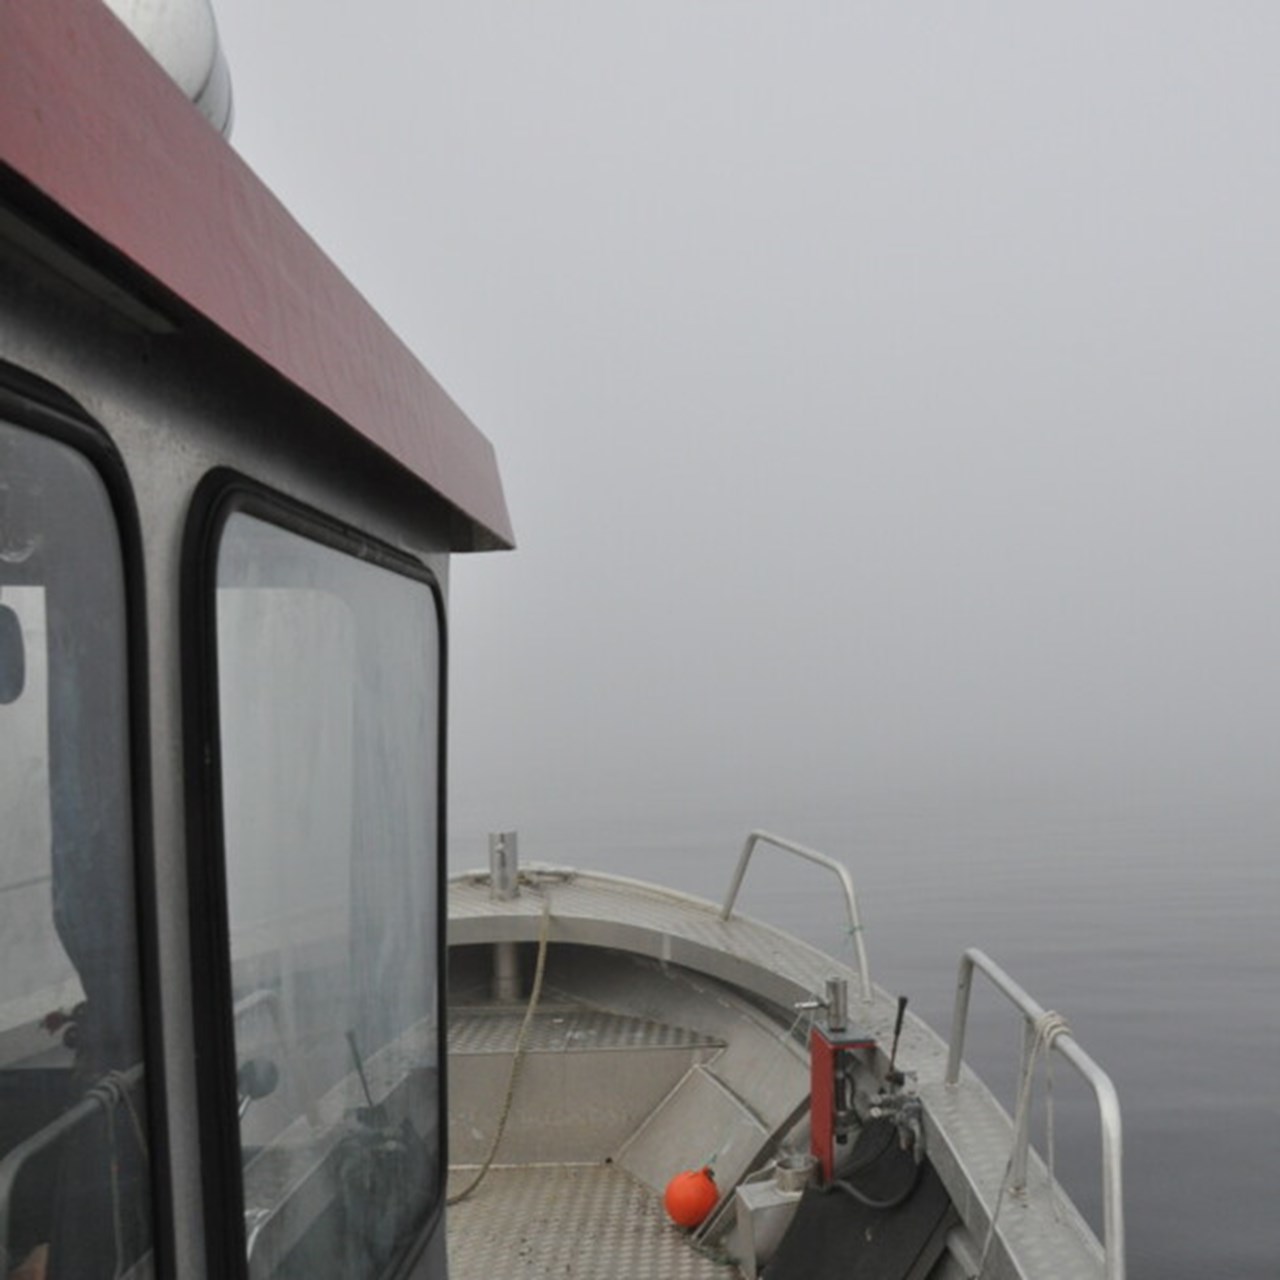 dimma på örefjärden sett från båten gråsuggan